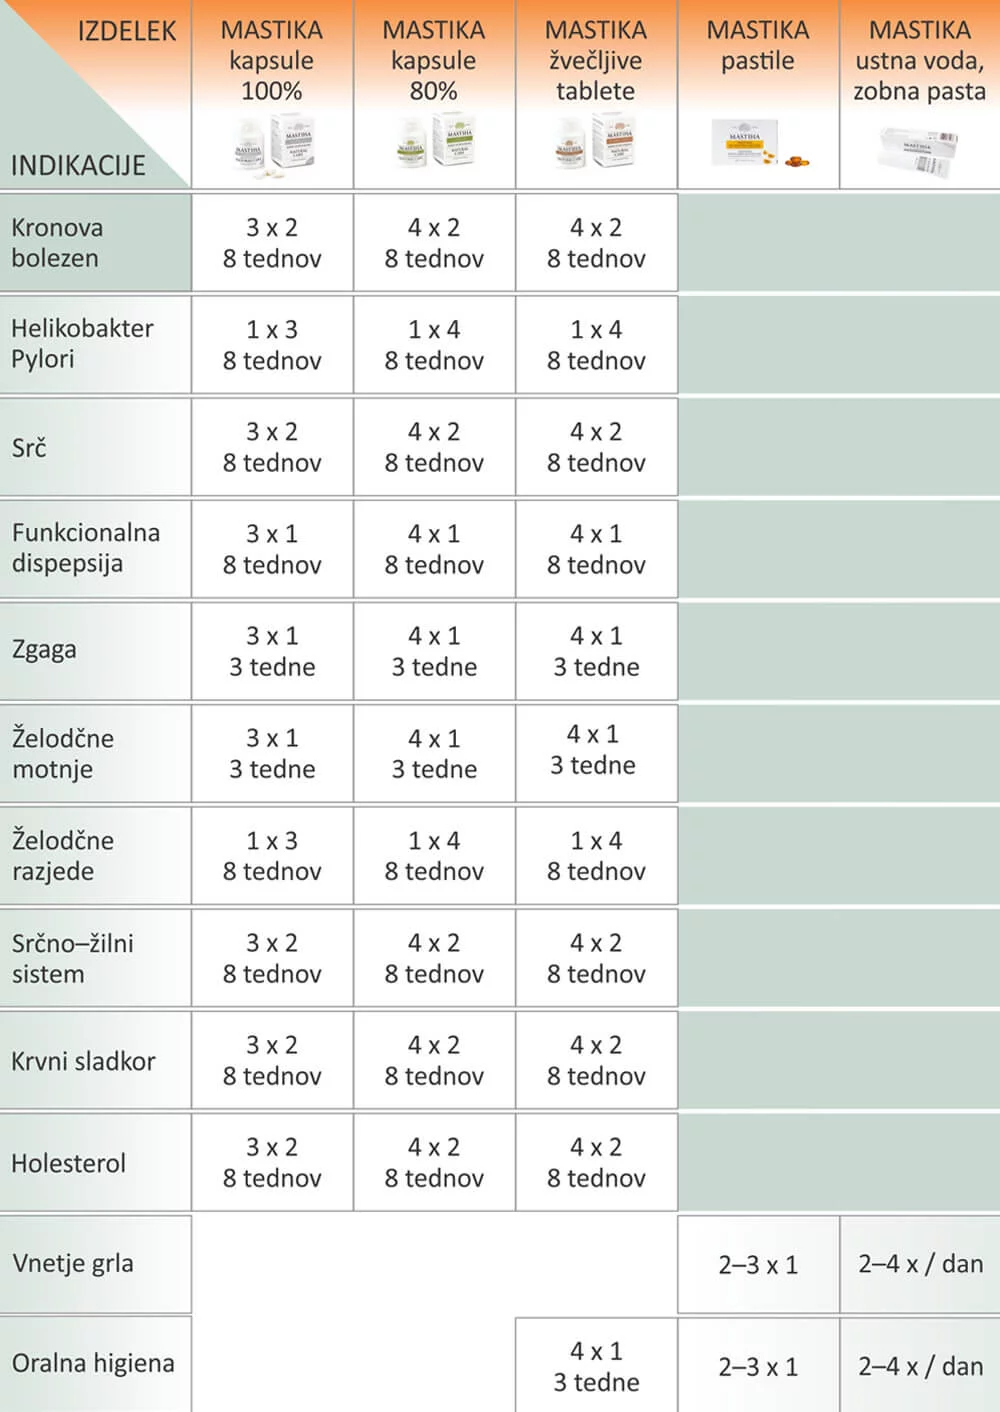 Mastika pastile za najboljšo higieno. Grafika prikazuje tabelo Mastika izdelkov in njegova uporabna za posamezni problem.